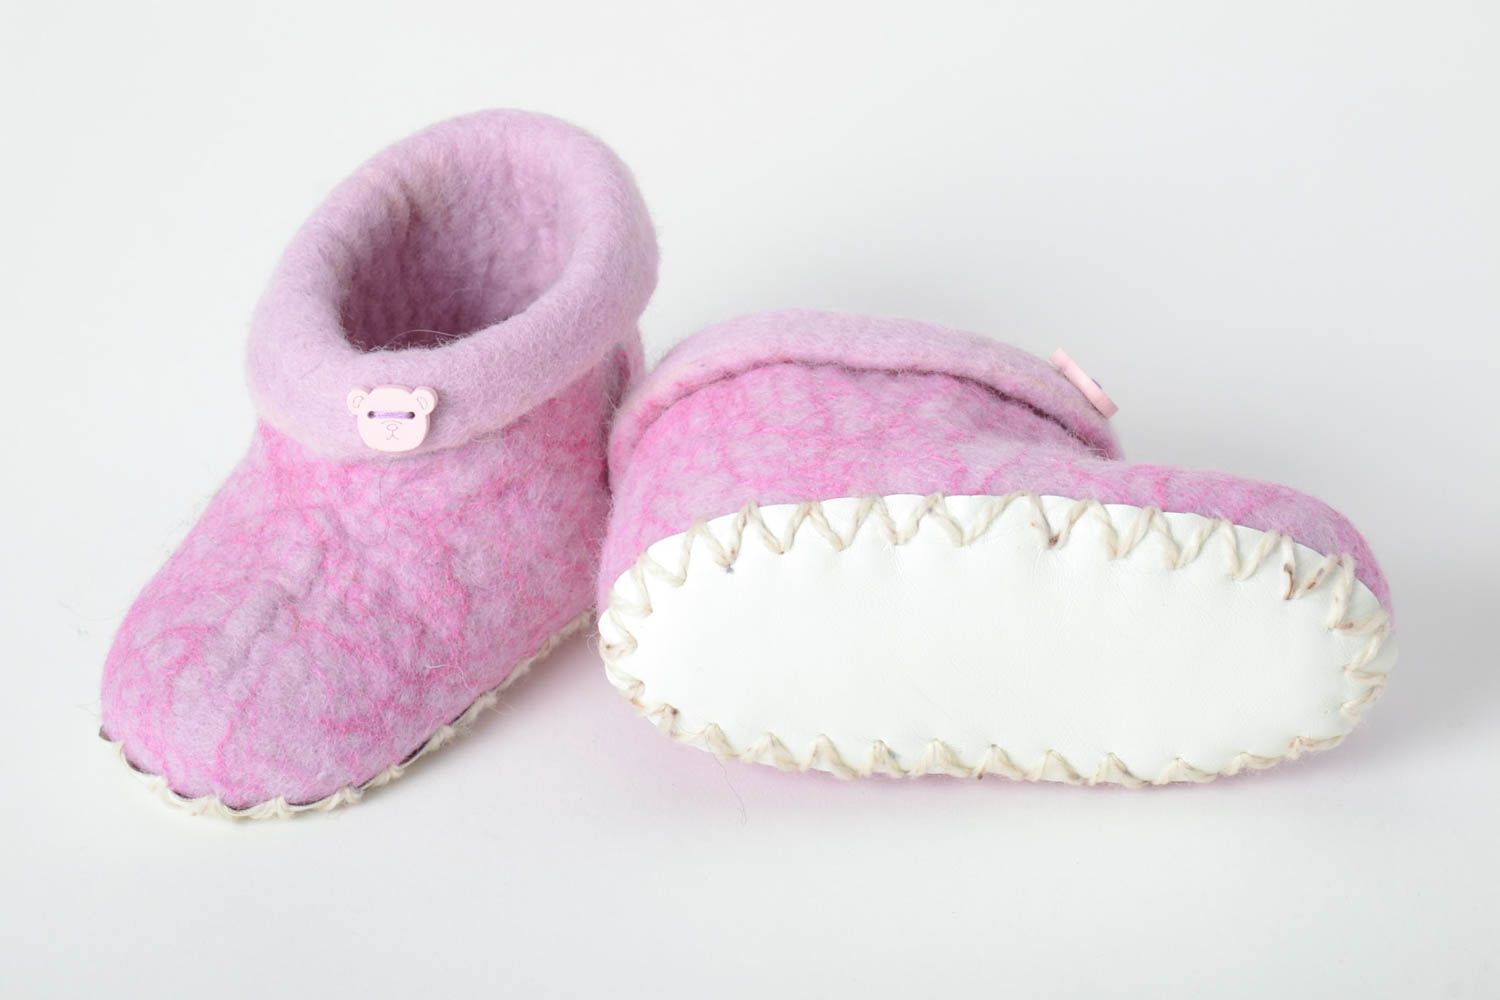 Handmade gefilzte Pantoffeln schöne Hausschuhe warme Kinderhausschuhe rosa foto 4